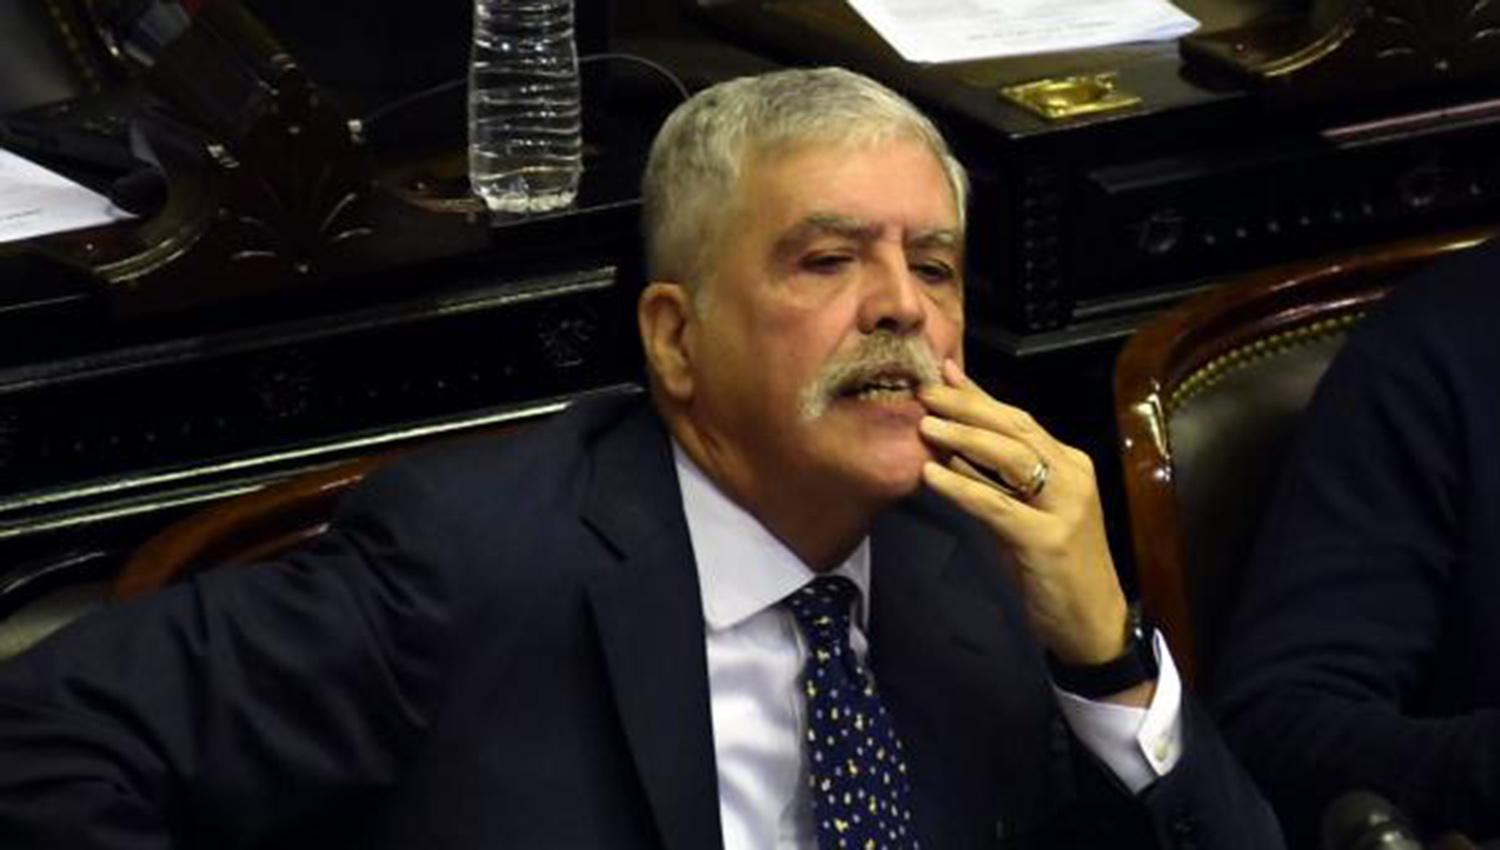 El juez Rodríguez rechazó detener y pedir el desafuero de De Vido